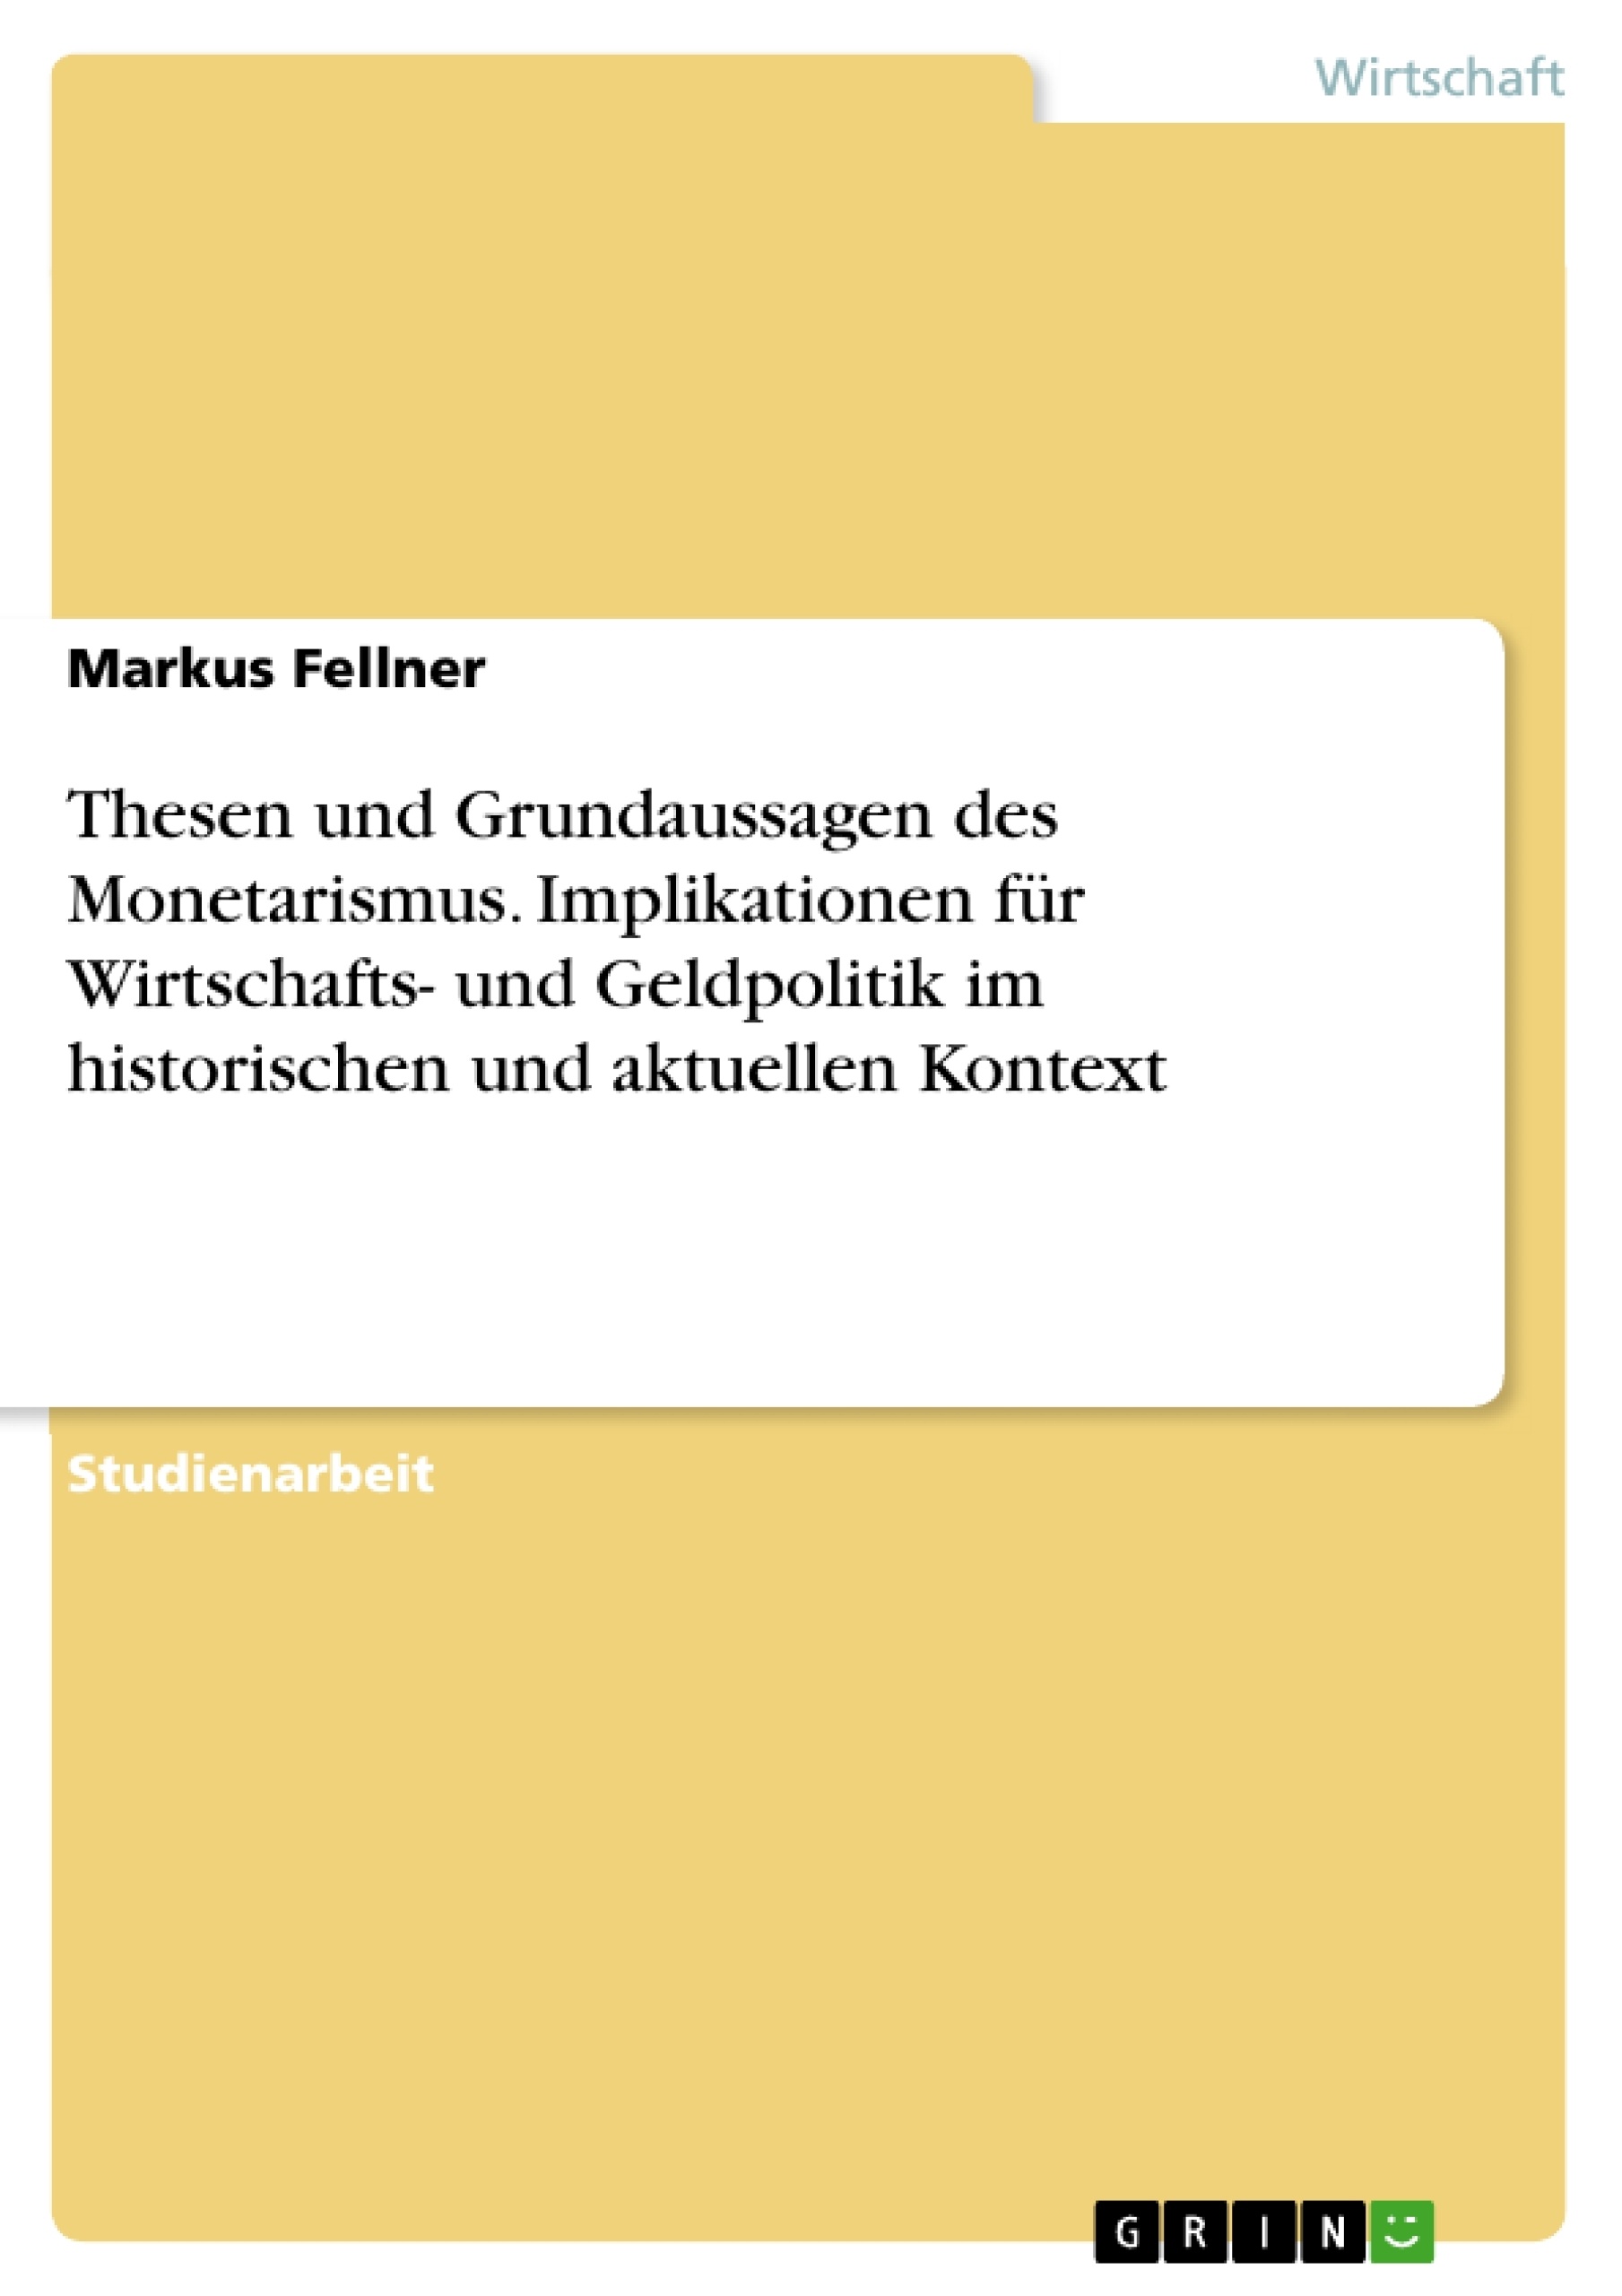 Titel: Thesen und Grundaussagen des Monetarismus. Implikationen für Wirtschafts- und Geldpolitik im historischen und aktuellen Kontext